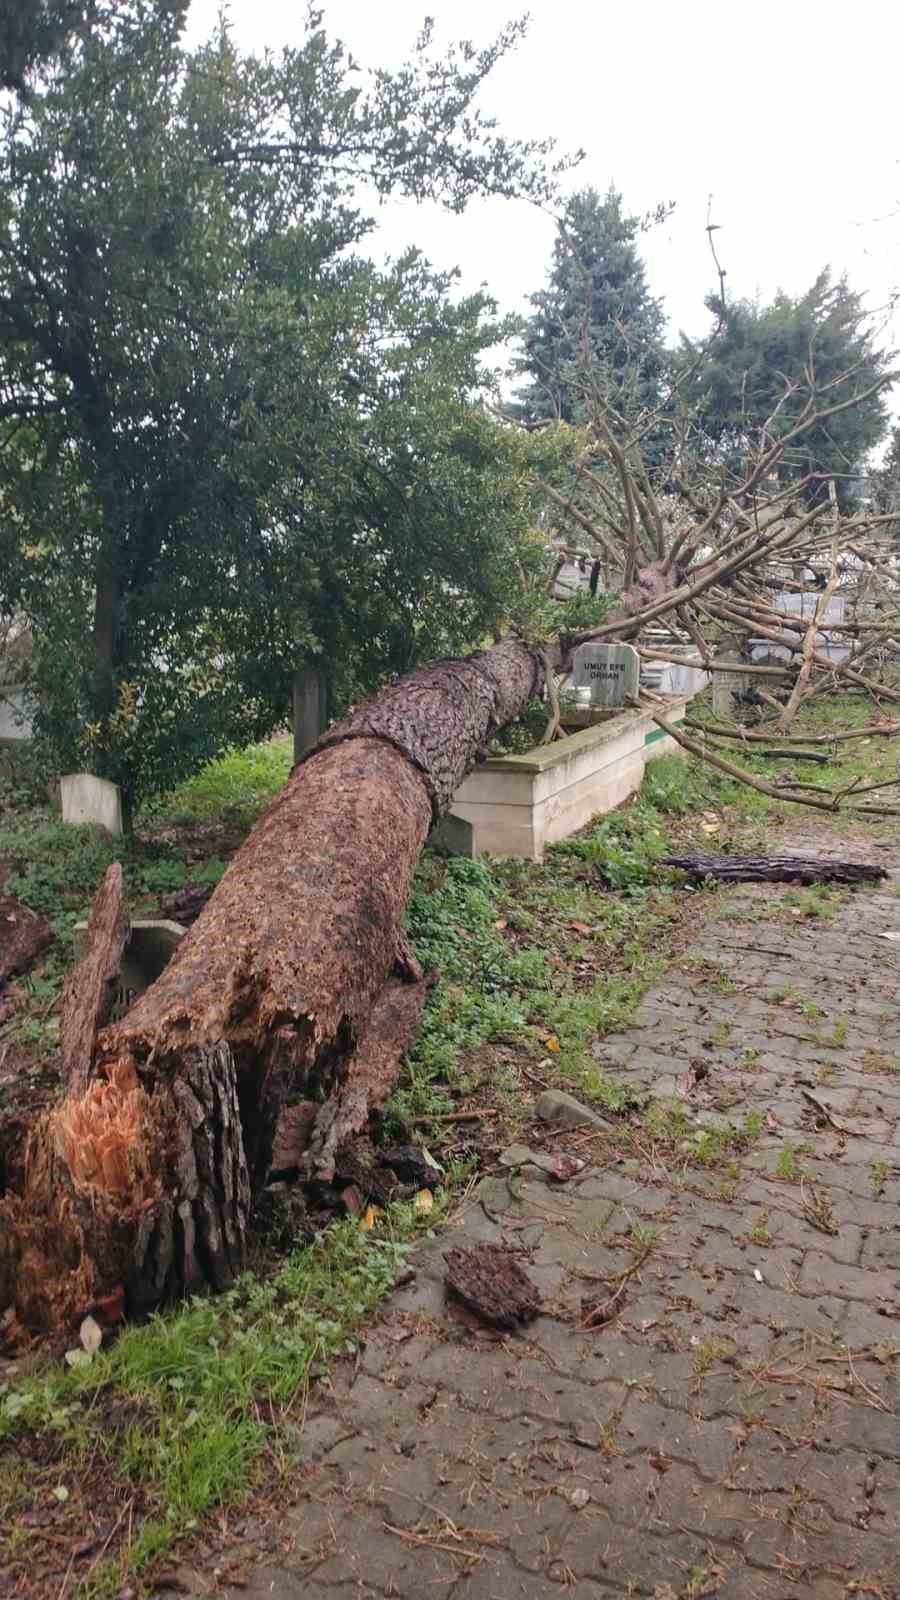 şiddetli fırtına şehir mezarlığında hasara yol açtı